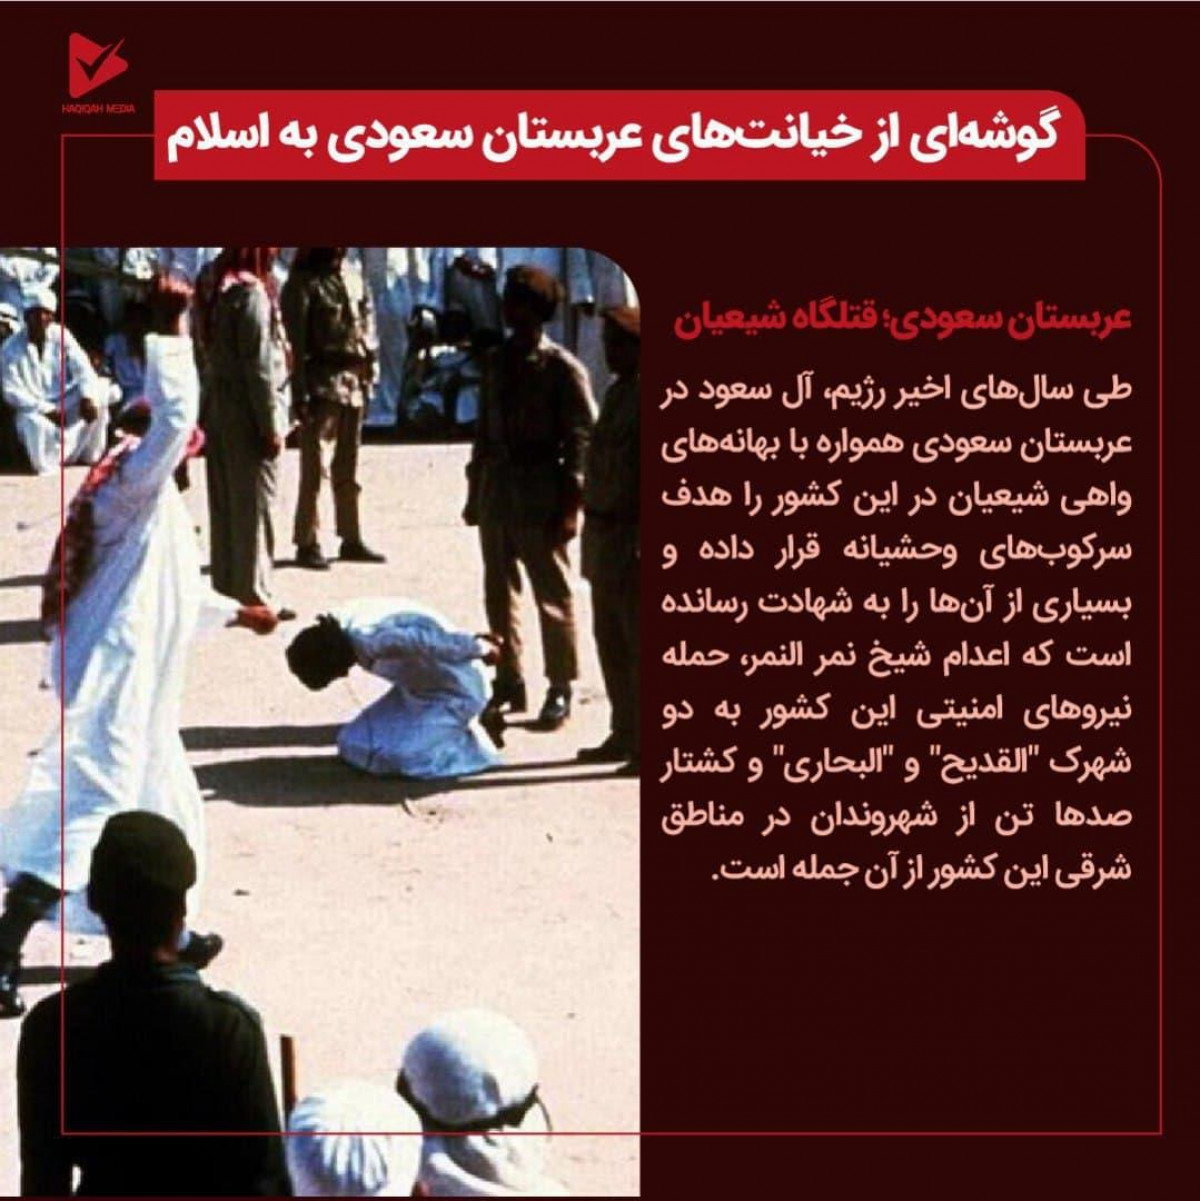 گوشه ای از خیانت های عربستان سعودی به اسلام/عربستان سعودی؛ قتلگاه شیعیان